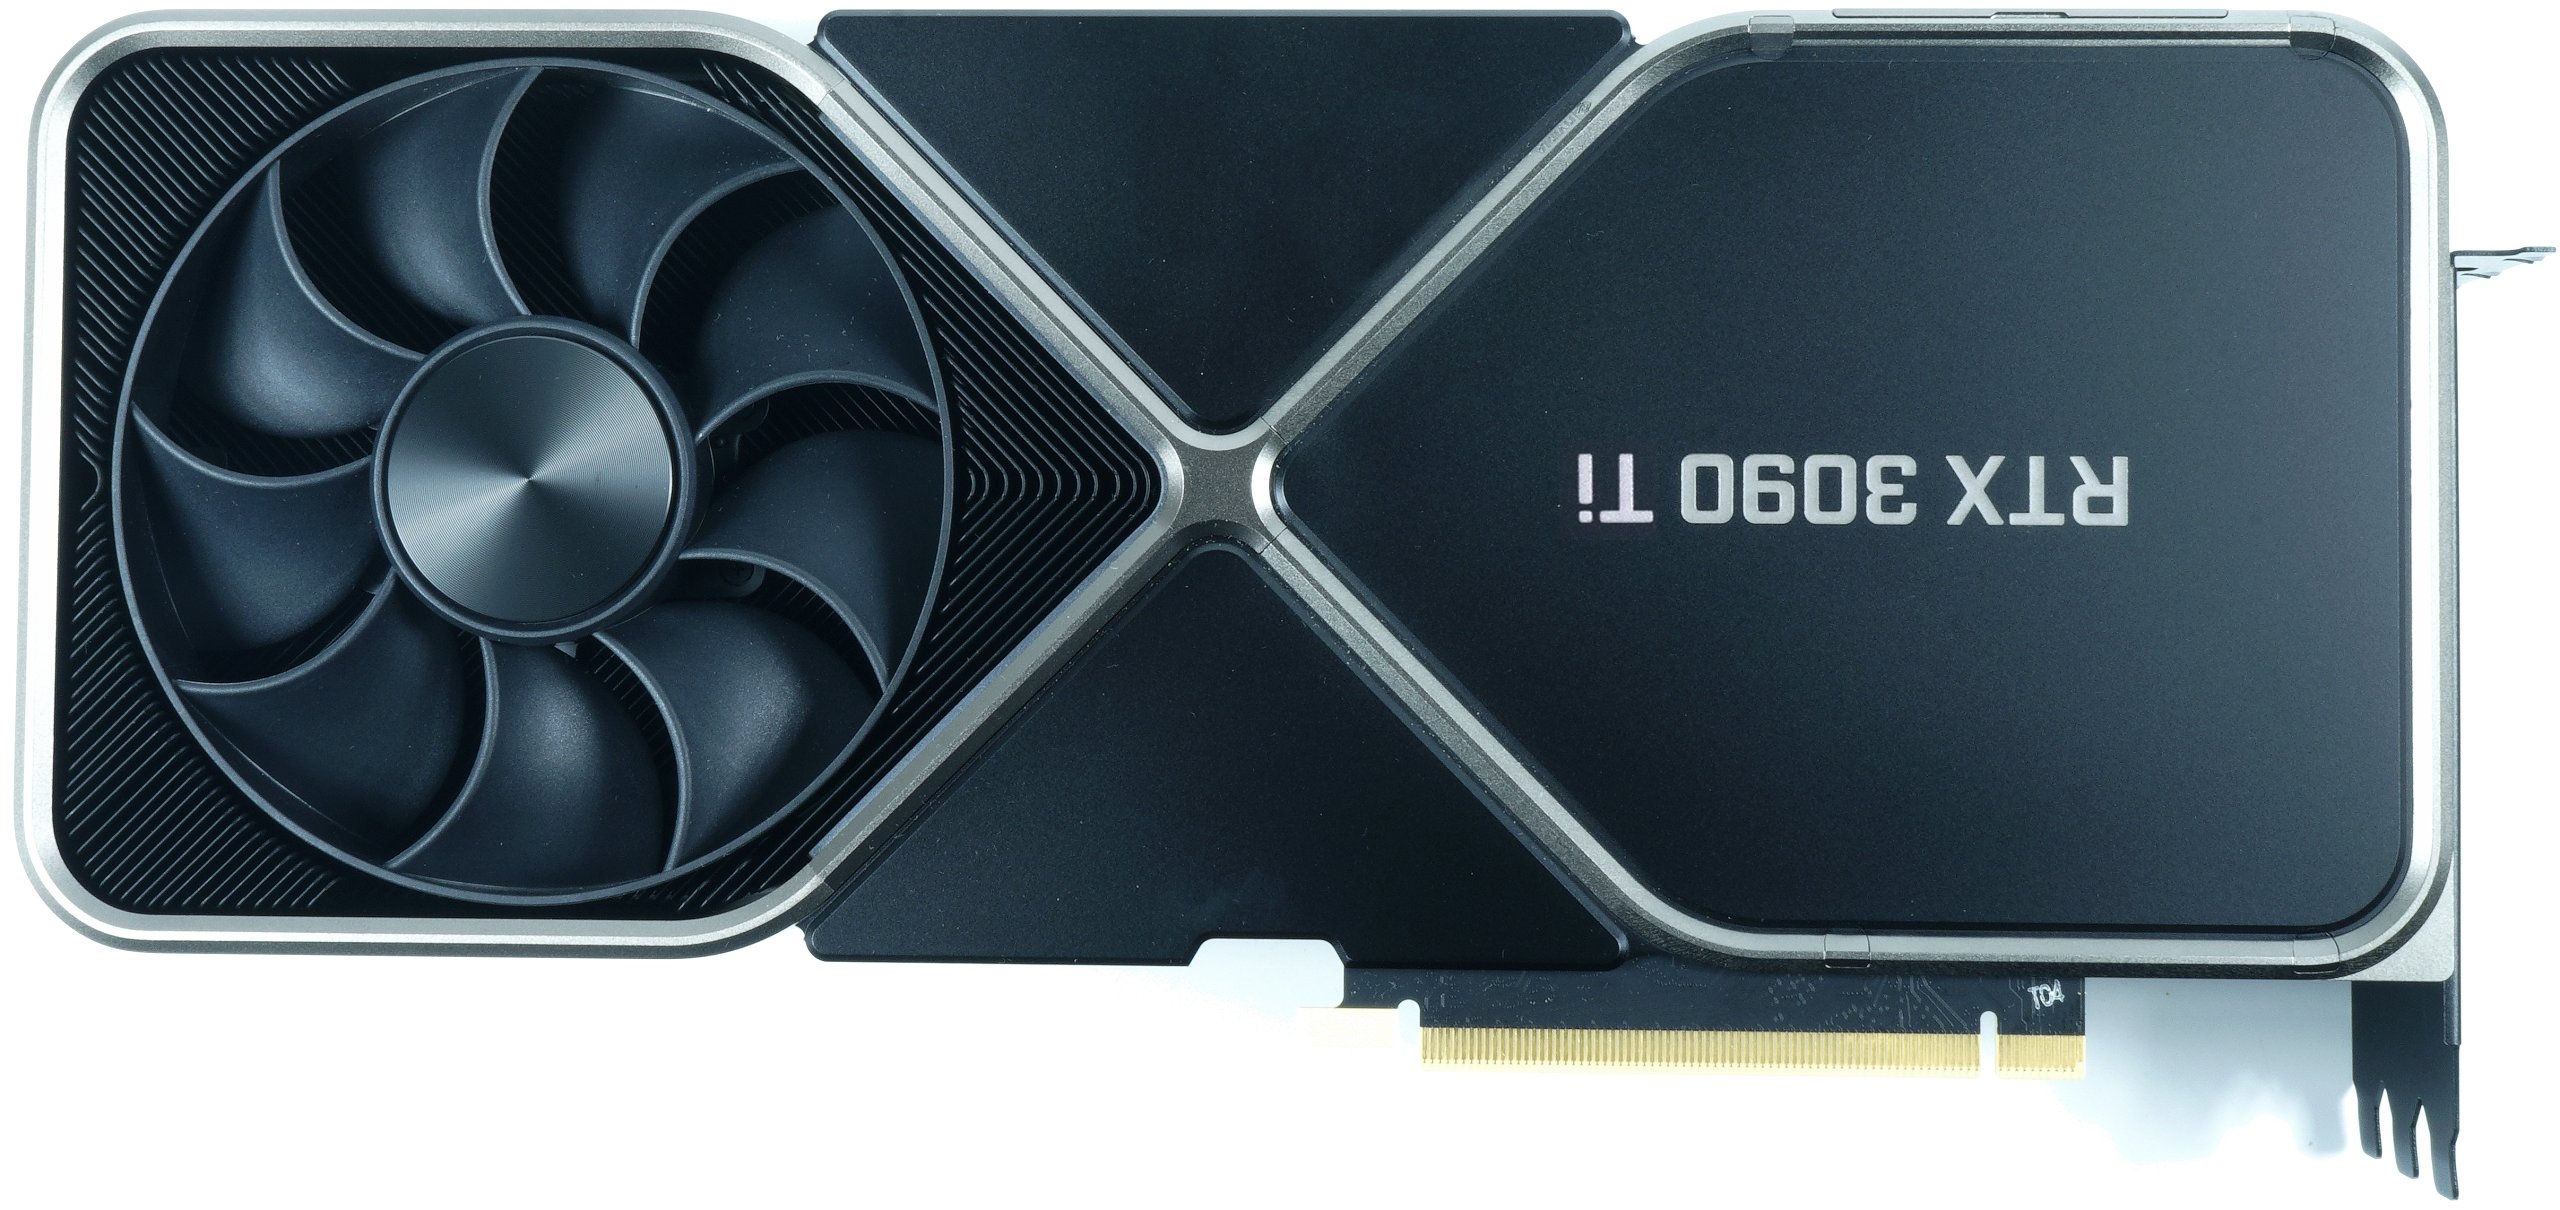 Ist die NVIDIA GeForce RTX 3090 Ti als Lernobjekt der Boardpartner für Lovelace gedacht oder bremst gar die PCI SIG?